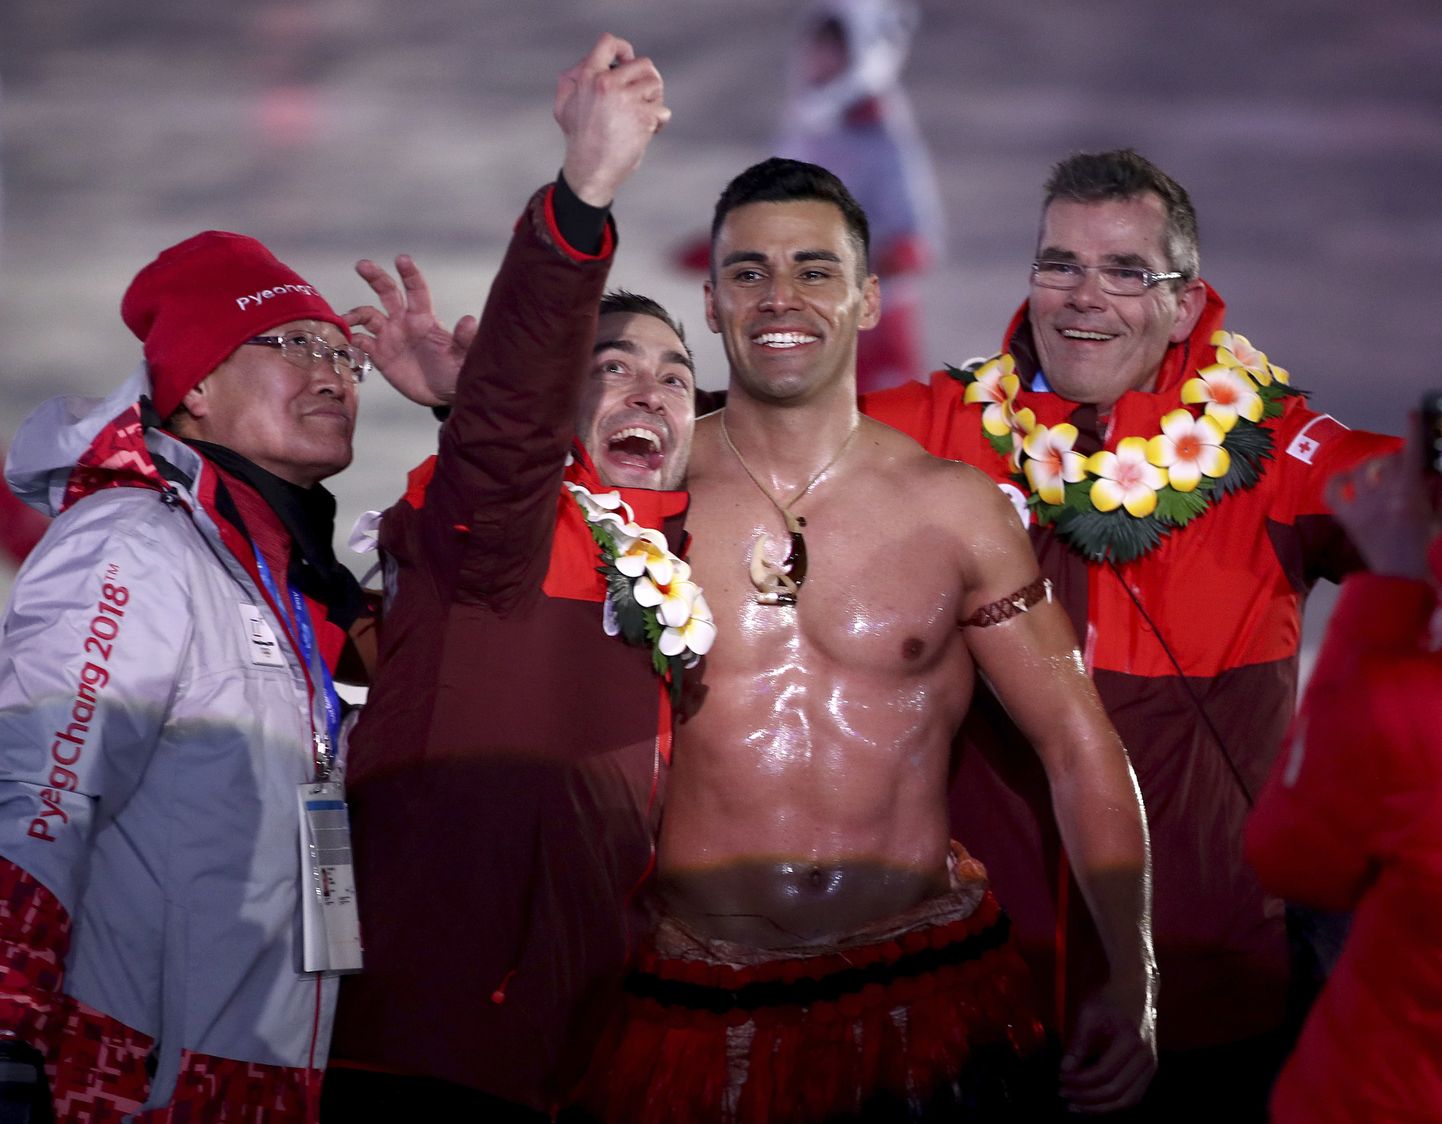 Tonga olümpiasportlane, Rio de Janeiro avatseremoonial õlitatud palja ülakehaga maailmakuulsaks saanud Pita Taufatofua kordas sama ka Pyeongchangis, kus ta on stardis murdmaasuusatajana.